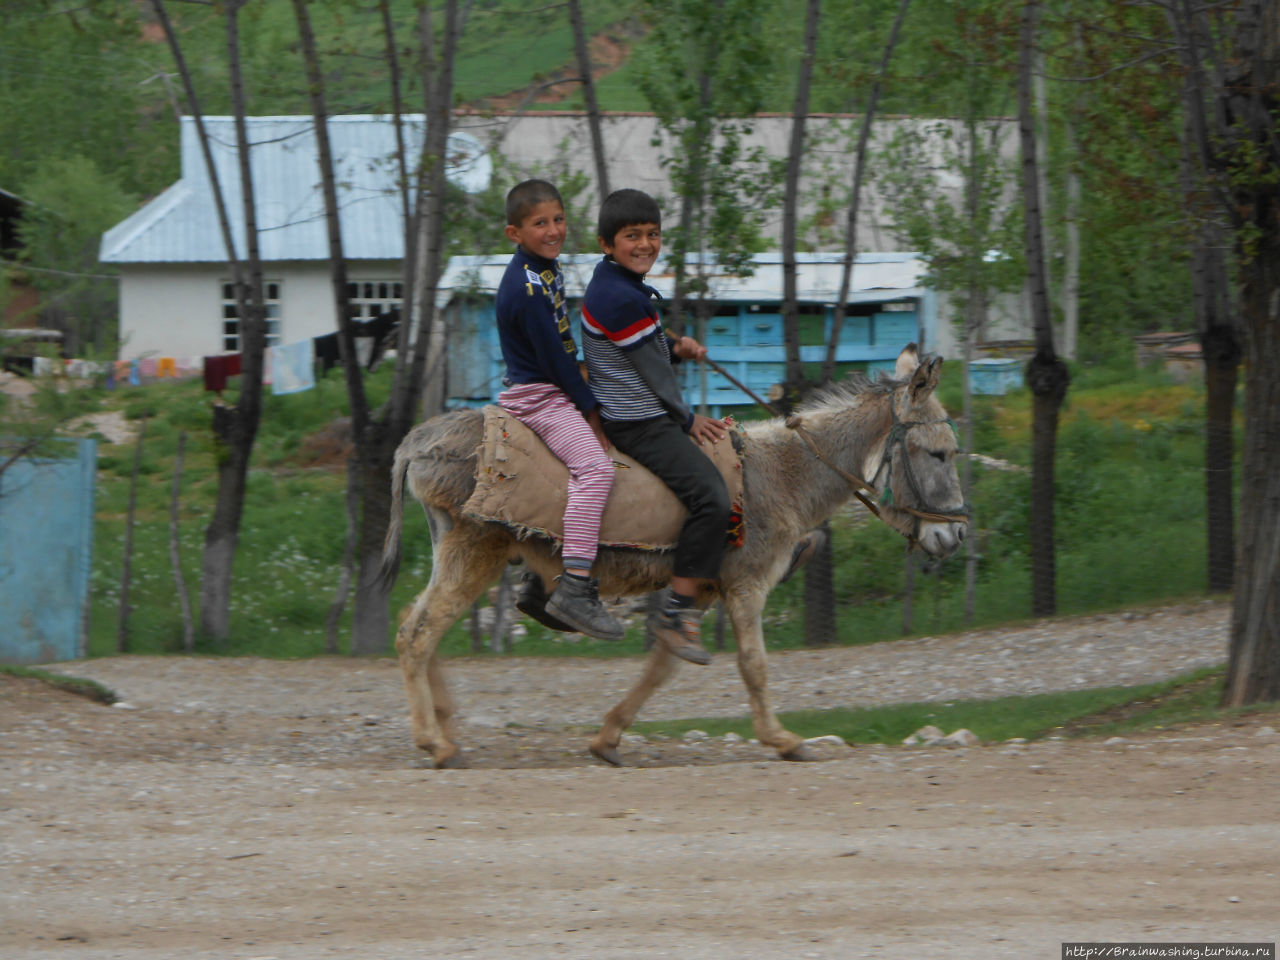 Автостопом по Памирскому тракту. Часть 1. Горно-Бадахшанская область, Таджикистан